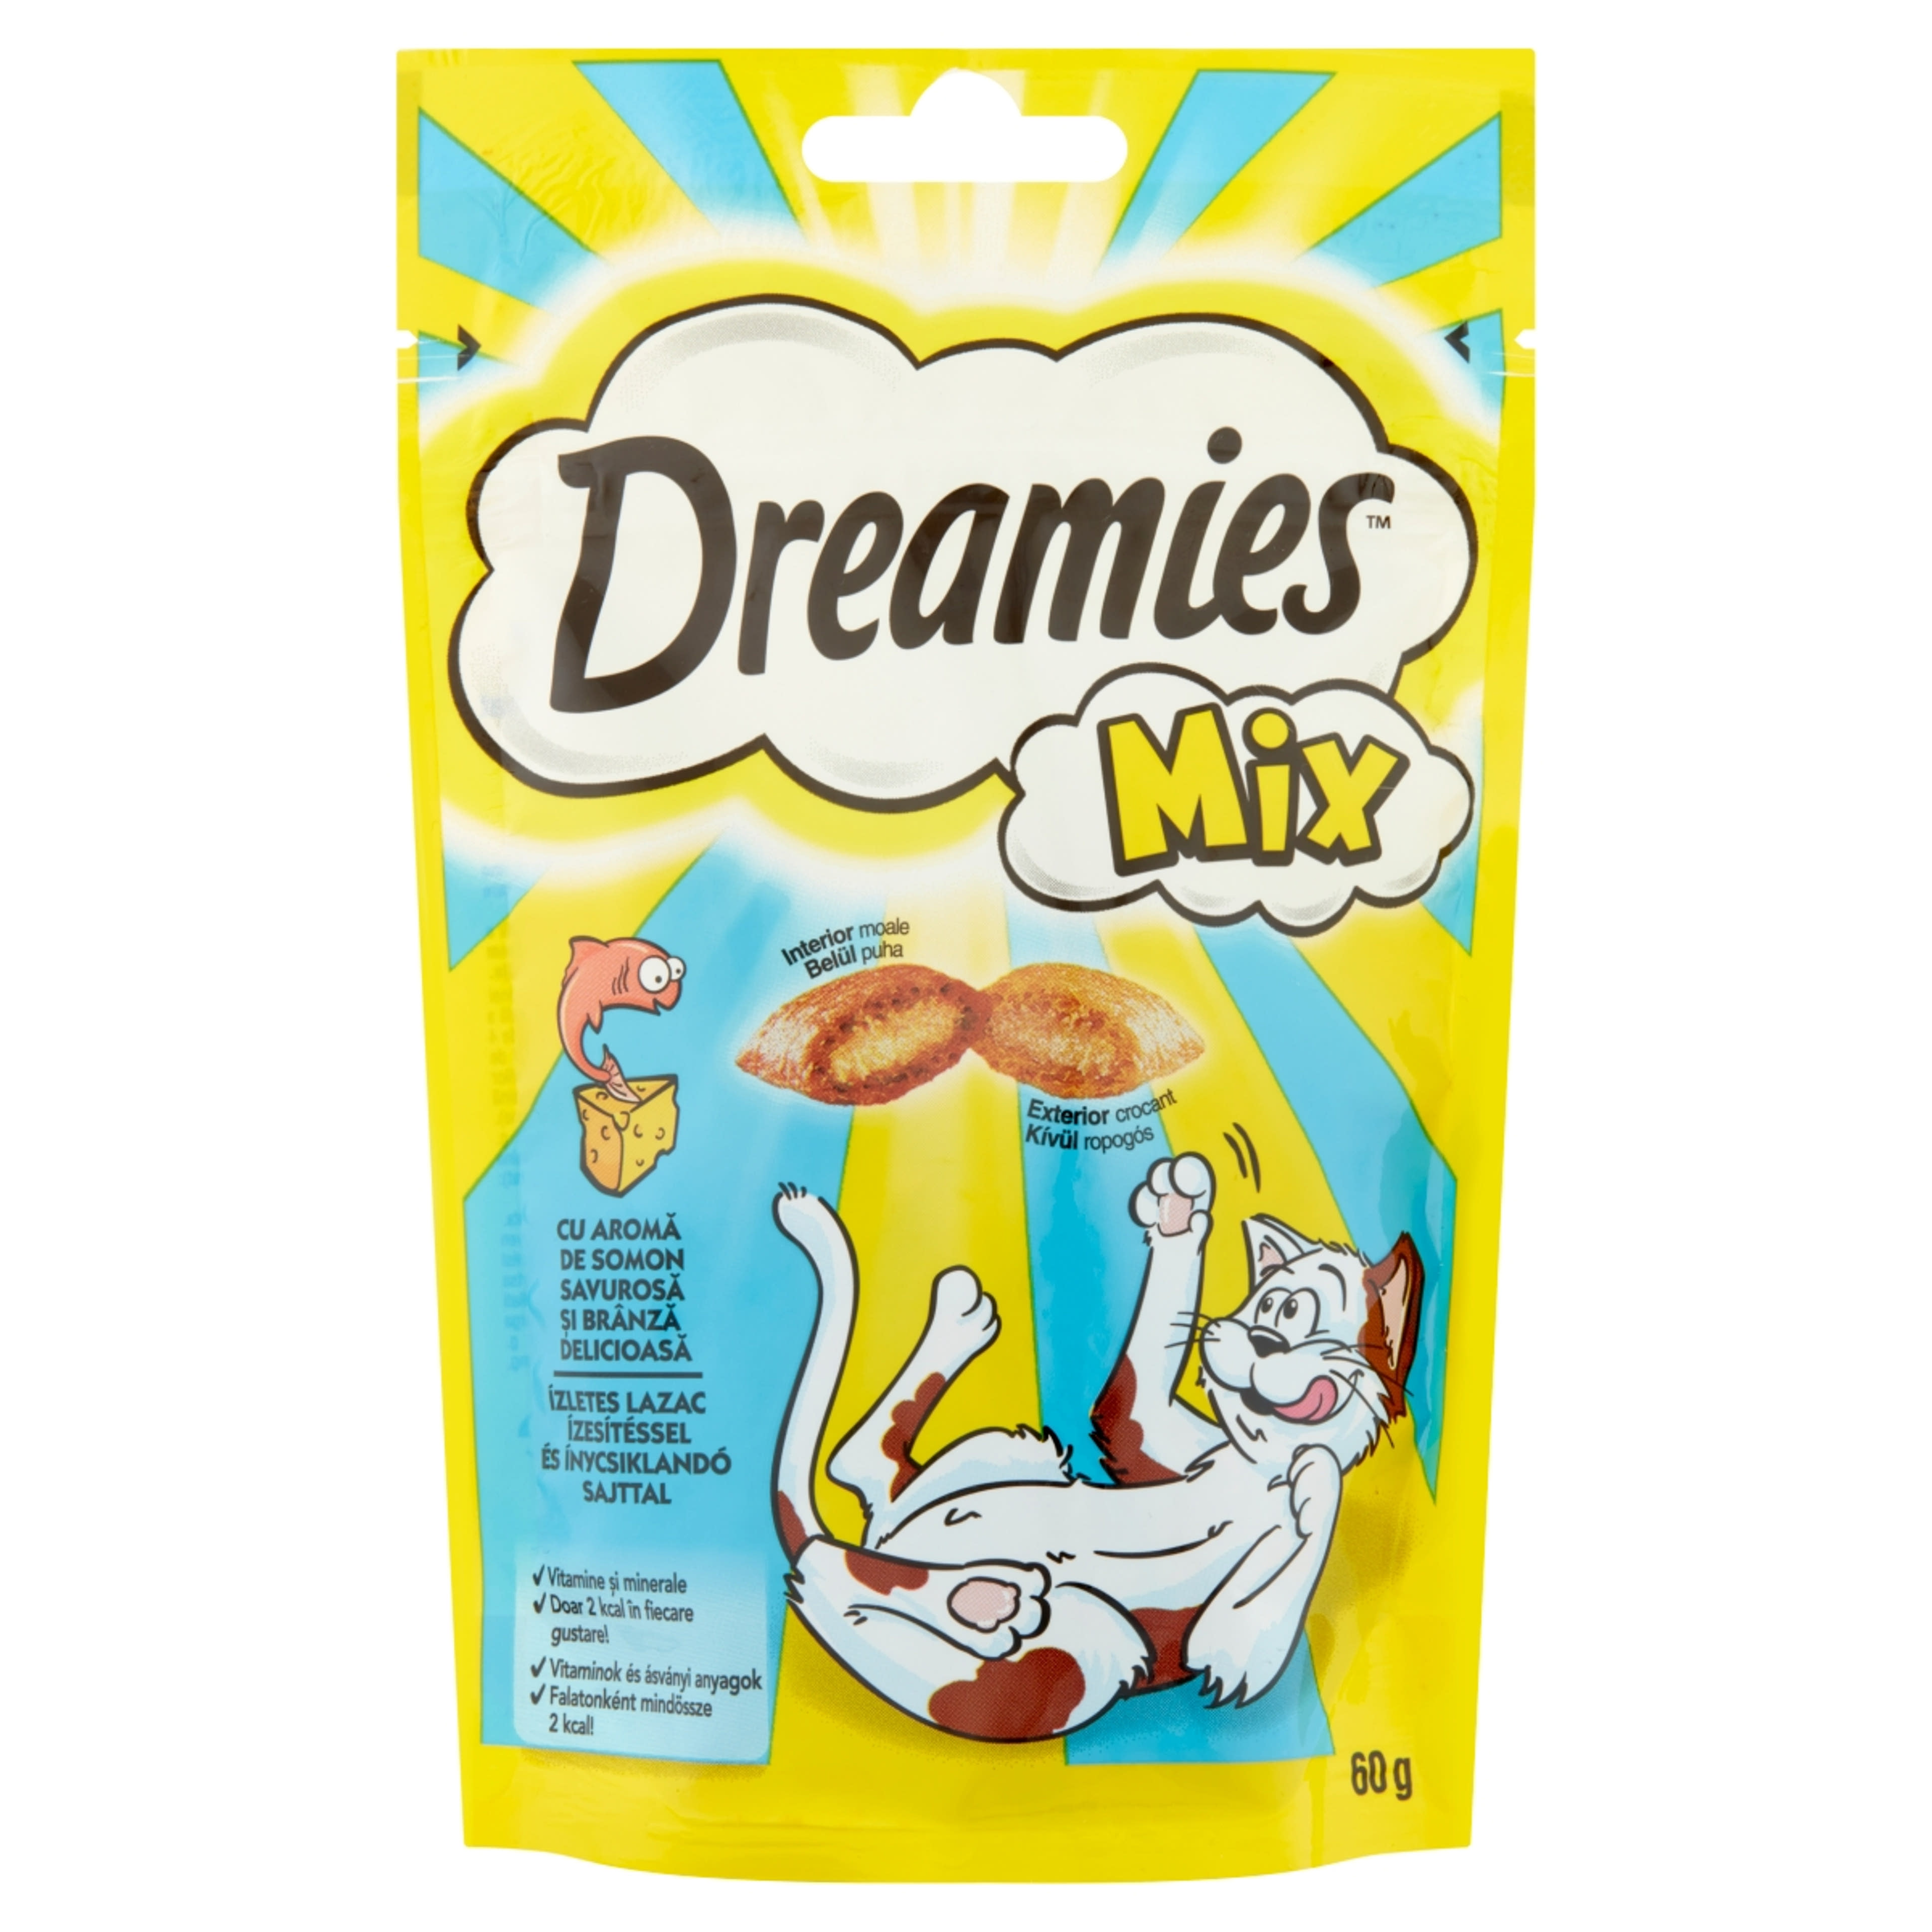 Dreamies Mix felnőtt és junior kiegészítő szárazeledel macskáknak, lazaccal és sajttal - 60 g